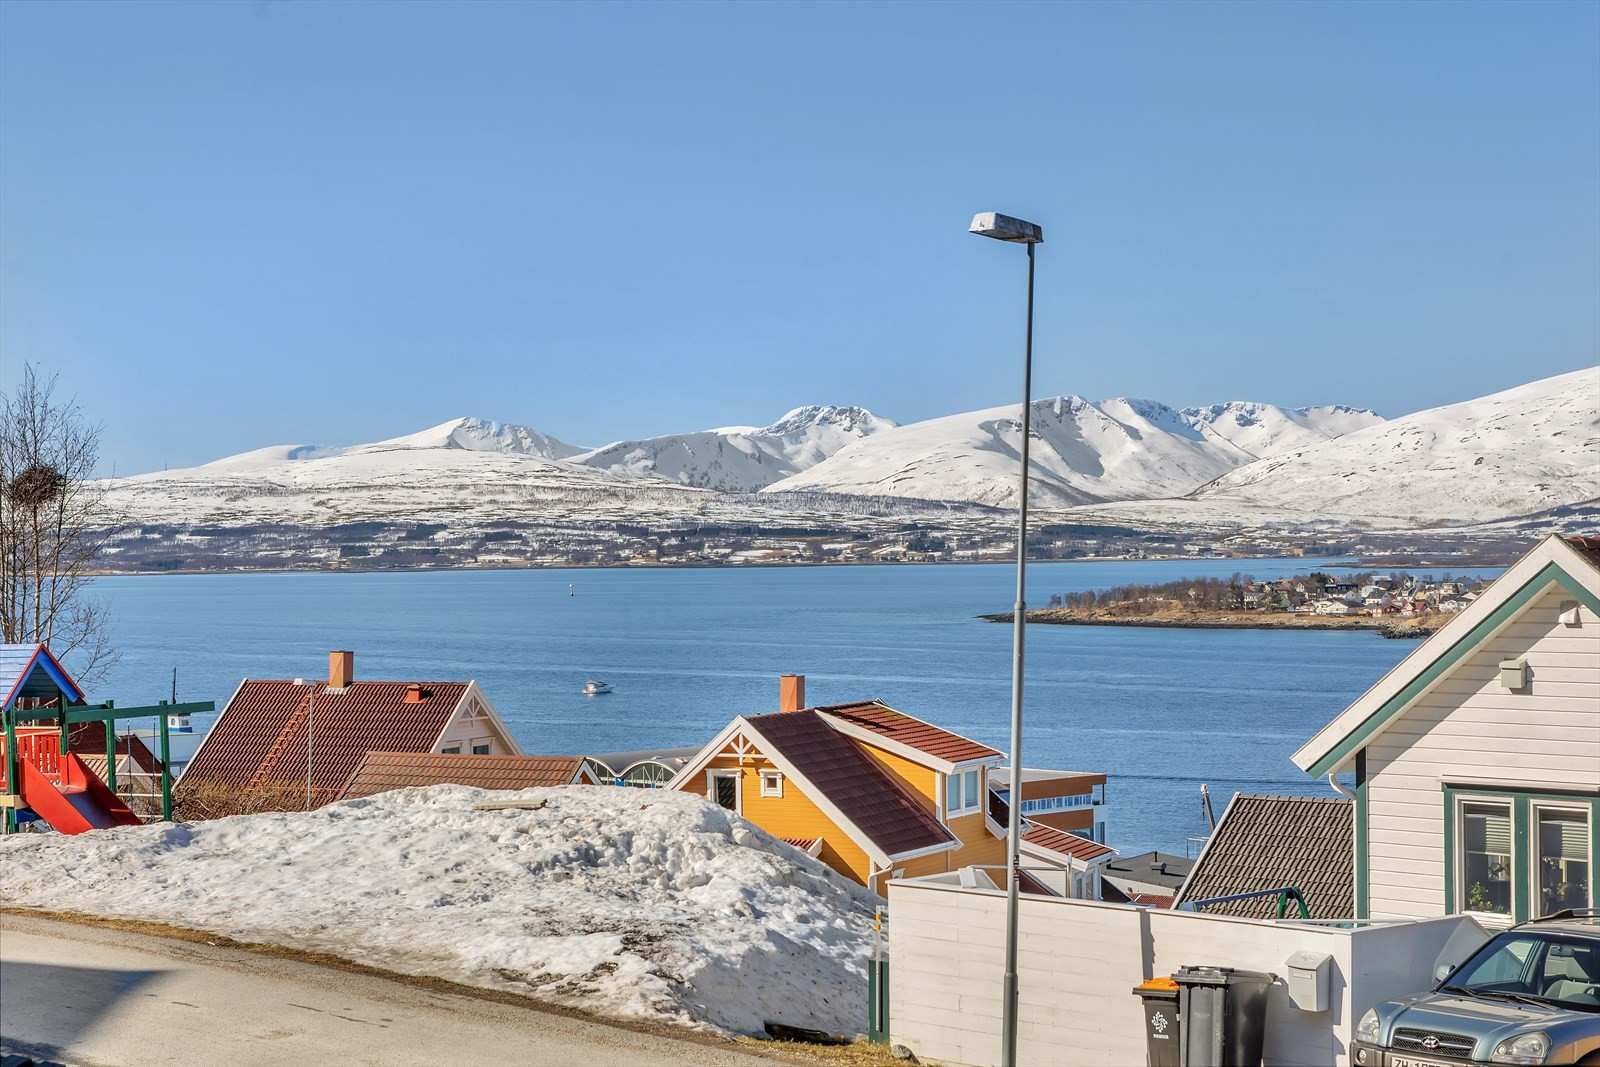 Nydelig utsikt over Kvaløyfjellene, sundet og deler av Tromsøya.